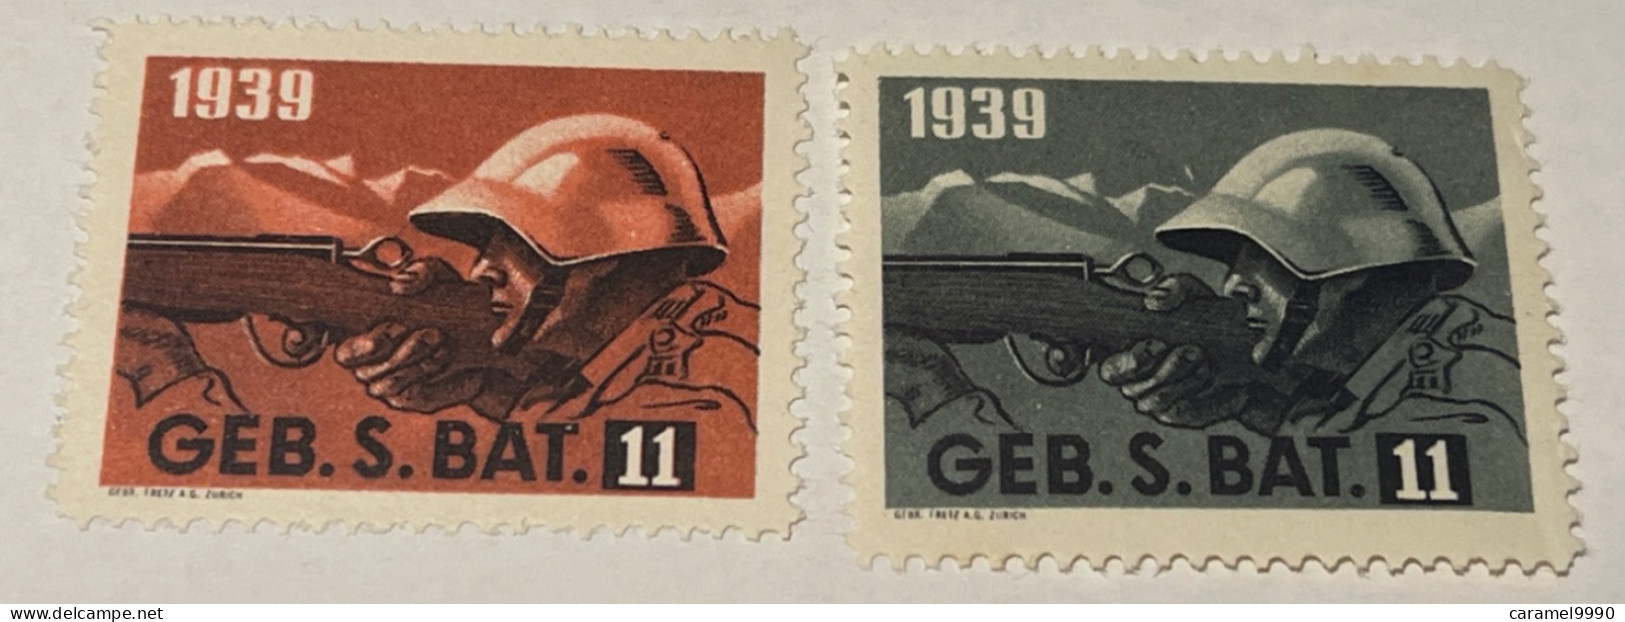 Schweiz Swiss Soldatenmarken 1939 GEB. S. 5. Bat 11 Z 24 - Vignetten